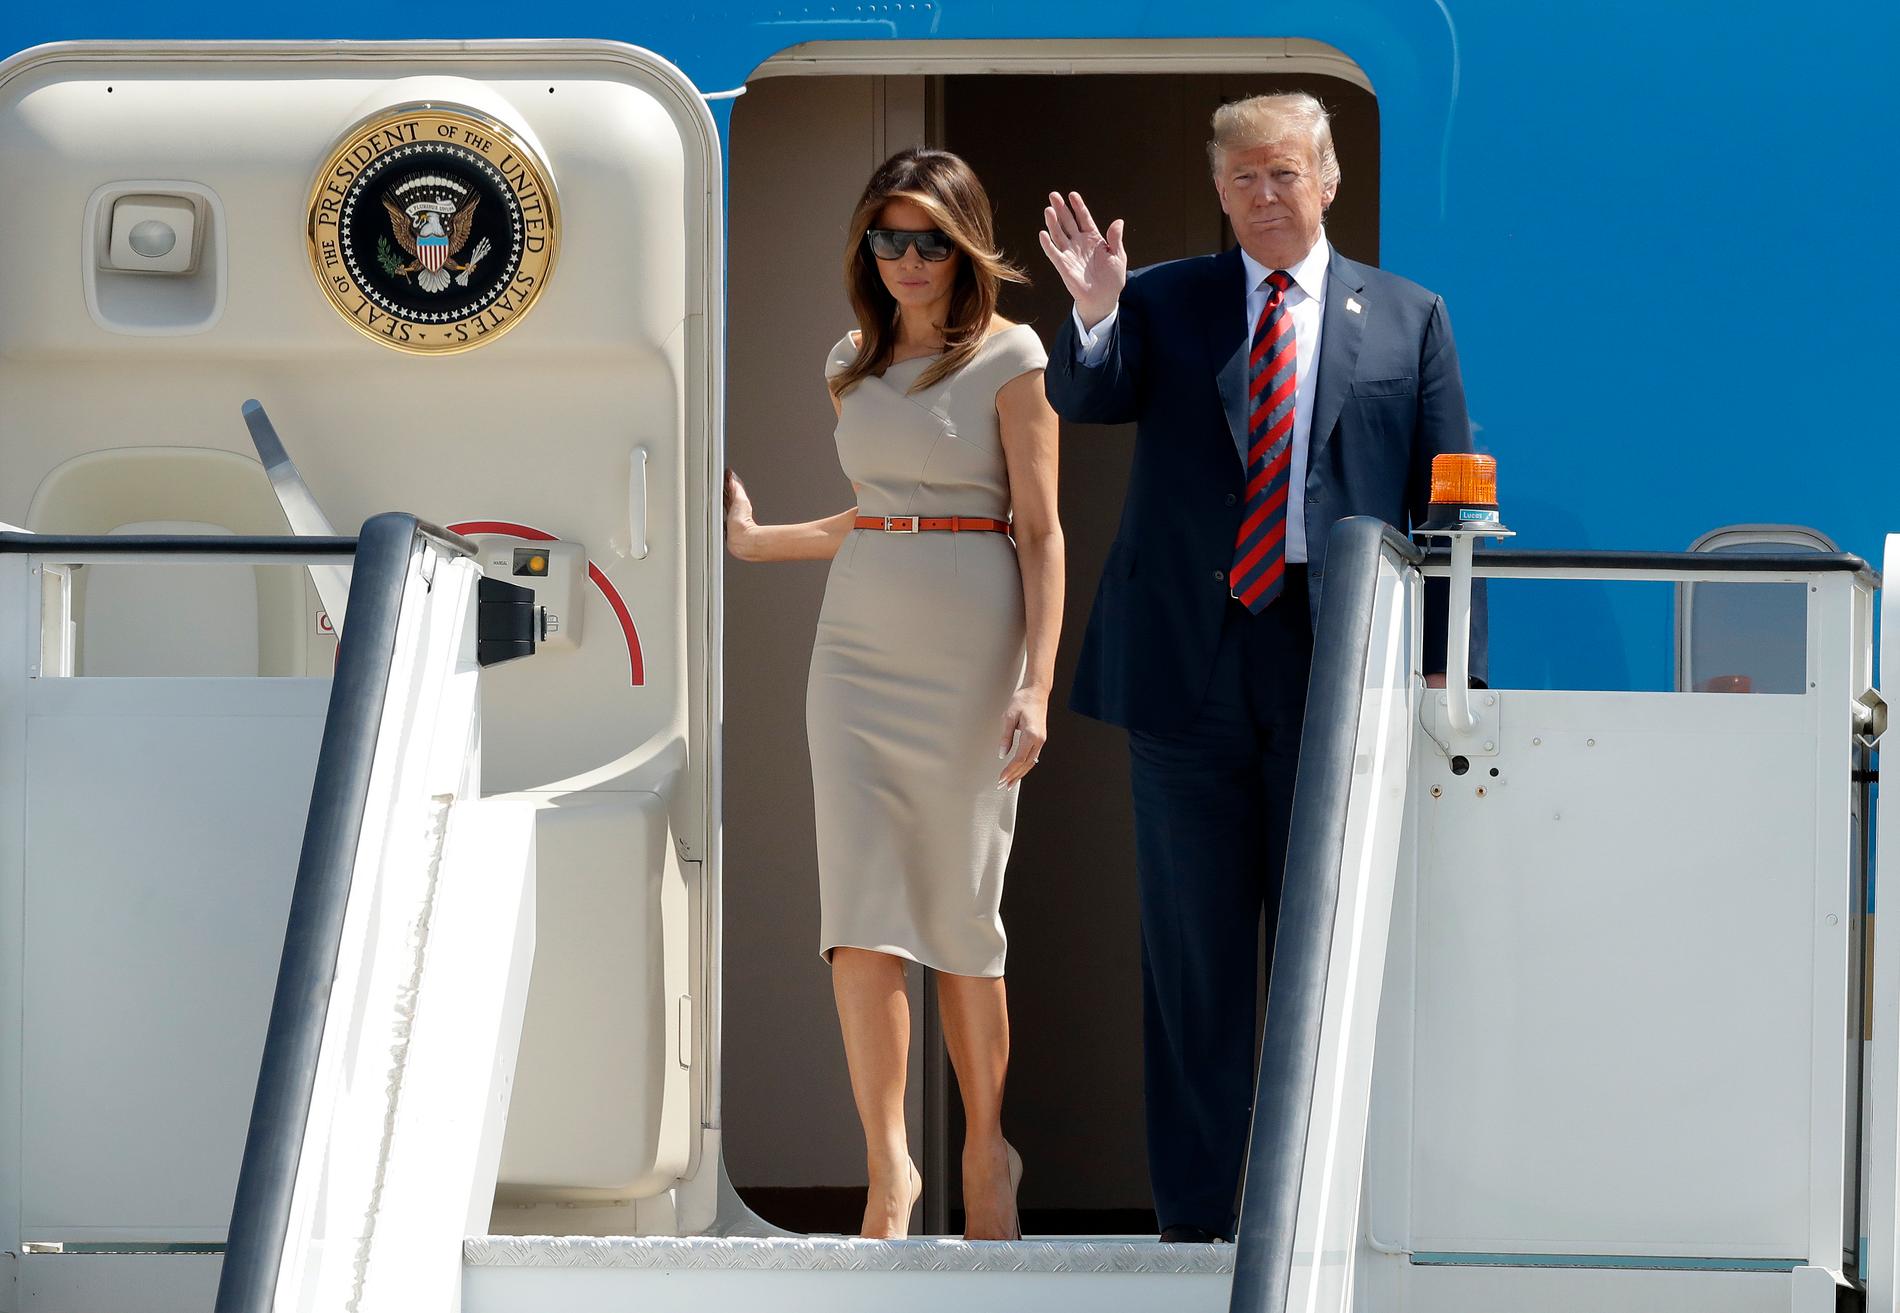 President Donald Trump og førstedame Melania Trump på vei ut av flyet på Stansted flyplass torsdag ettermiddag. Foto: Matt Dunham / AP / NTB scanpix